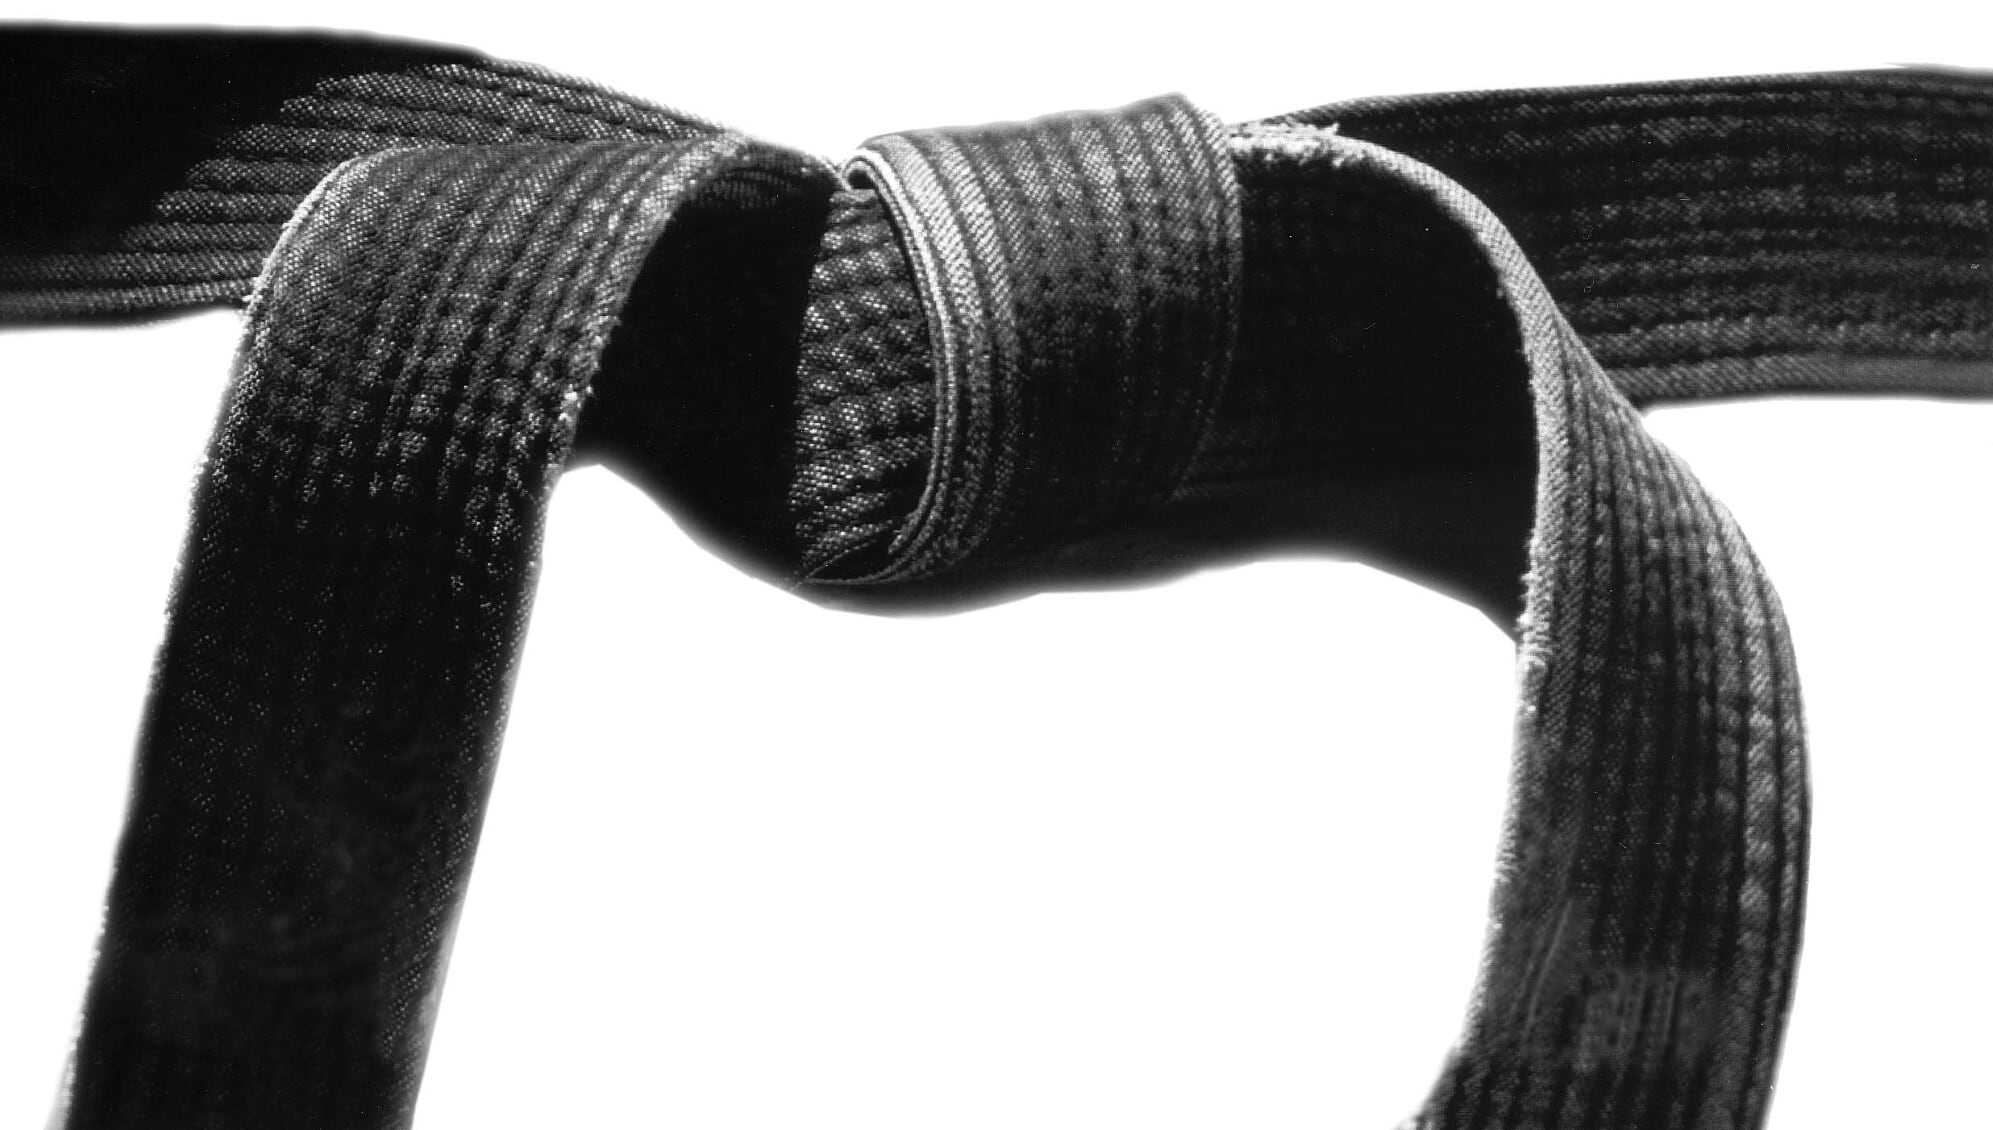 Image of multiple Black Belts lined up